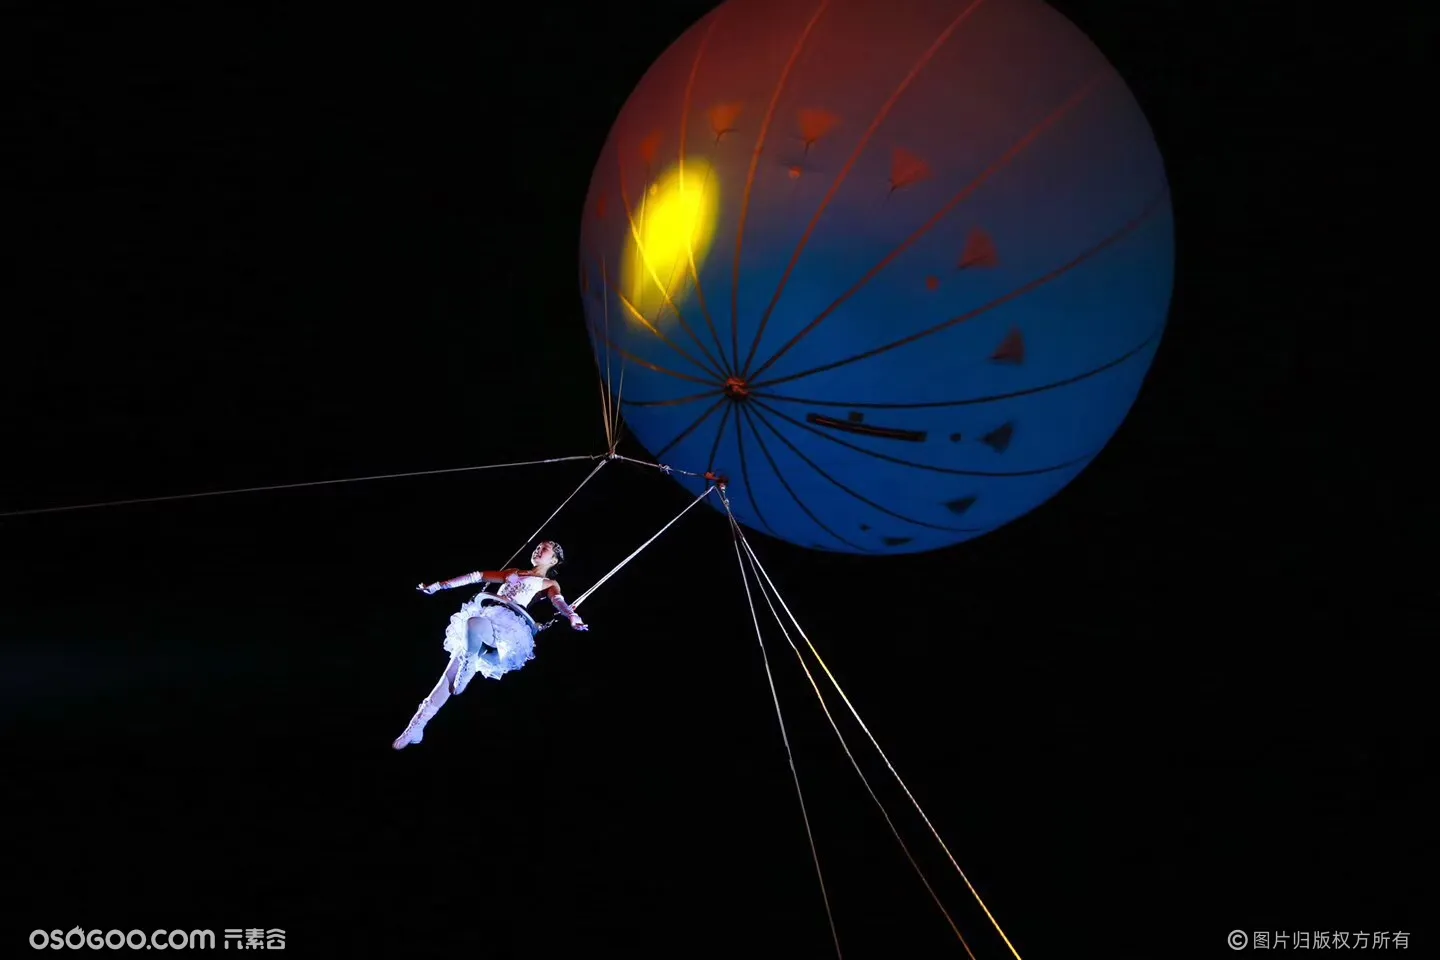 高空威亚气球空中芭蕾嫦娥奔月创意互动表演